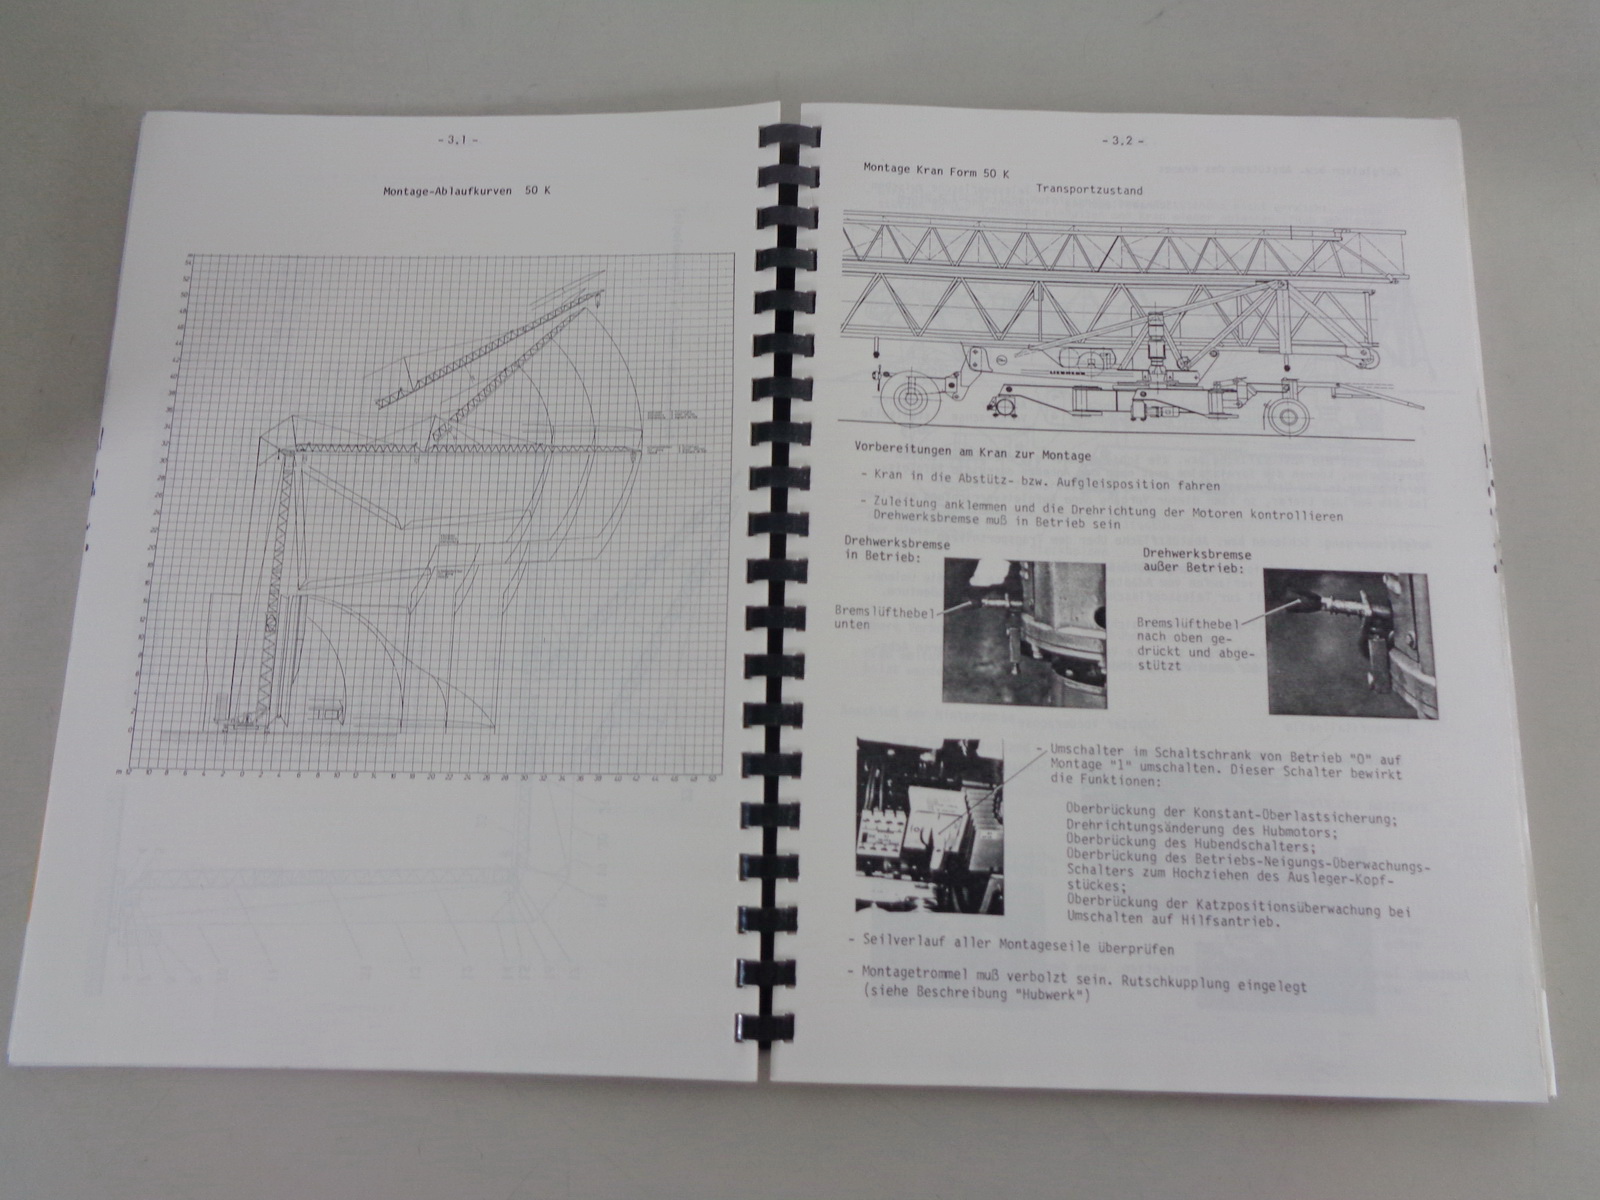 Datenblatt Technische Beschreibung Liebherr Turmdrehkran 800 HC von 06/1986 